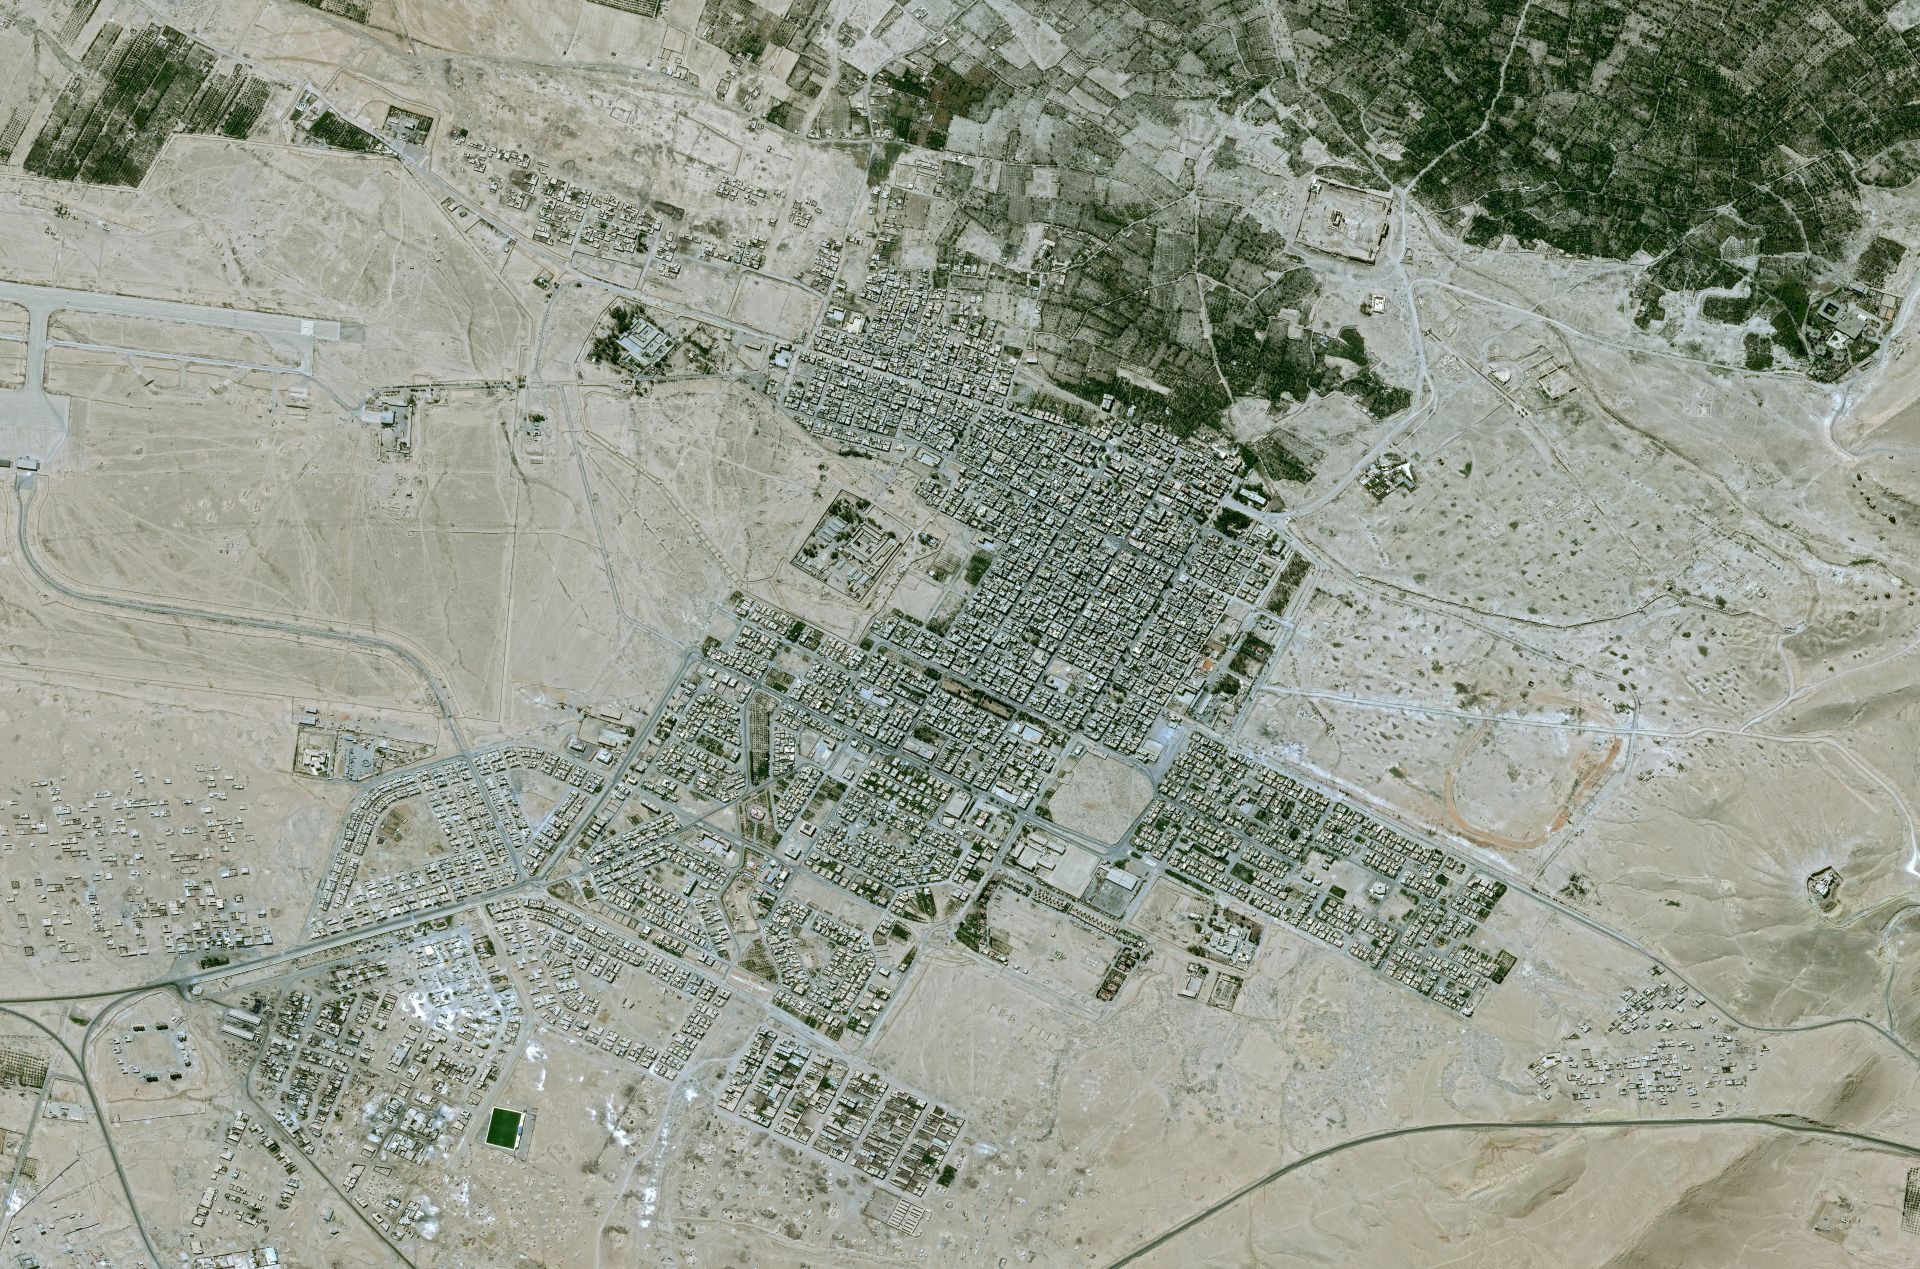 Satellite Pleiades - Palmyre - Syrie - temple de Baalshamin - avant destruction par EI - 22 mai 2015 - CNES – Airbus Defence and Space - UNITAR